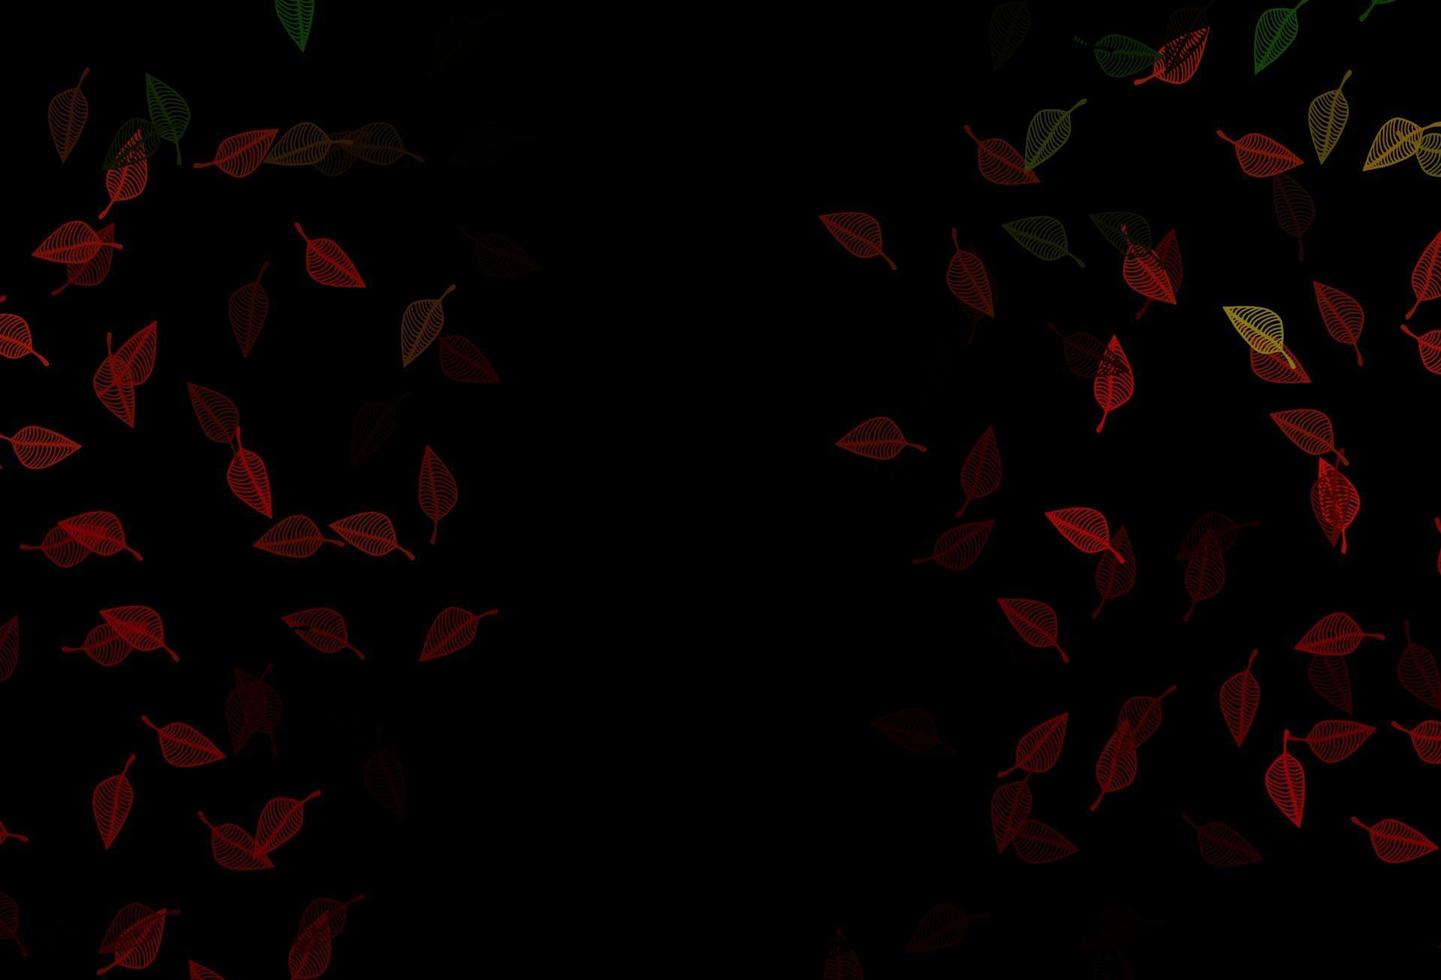 padrão de doodle de vetor verde e vermelho escuro.